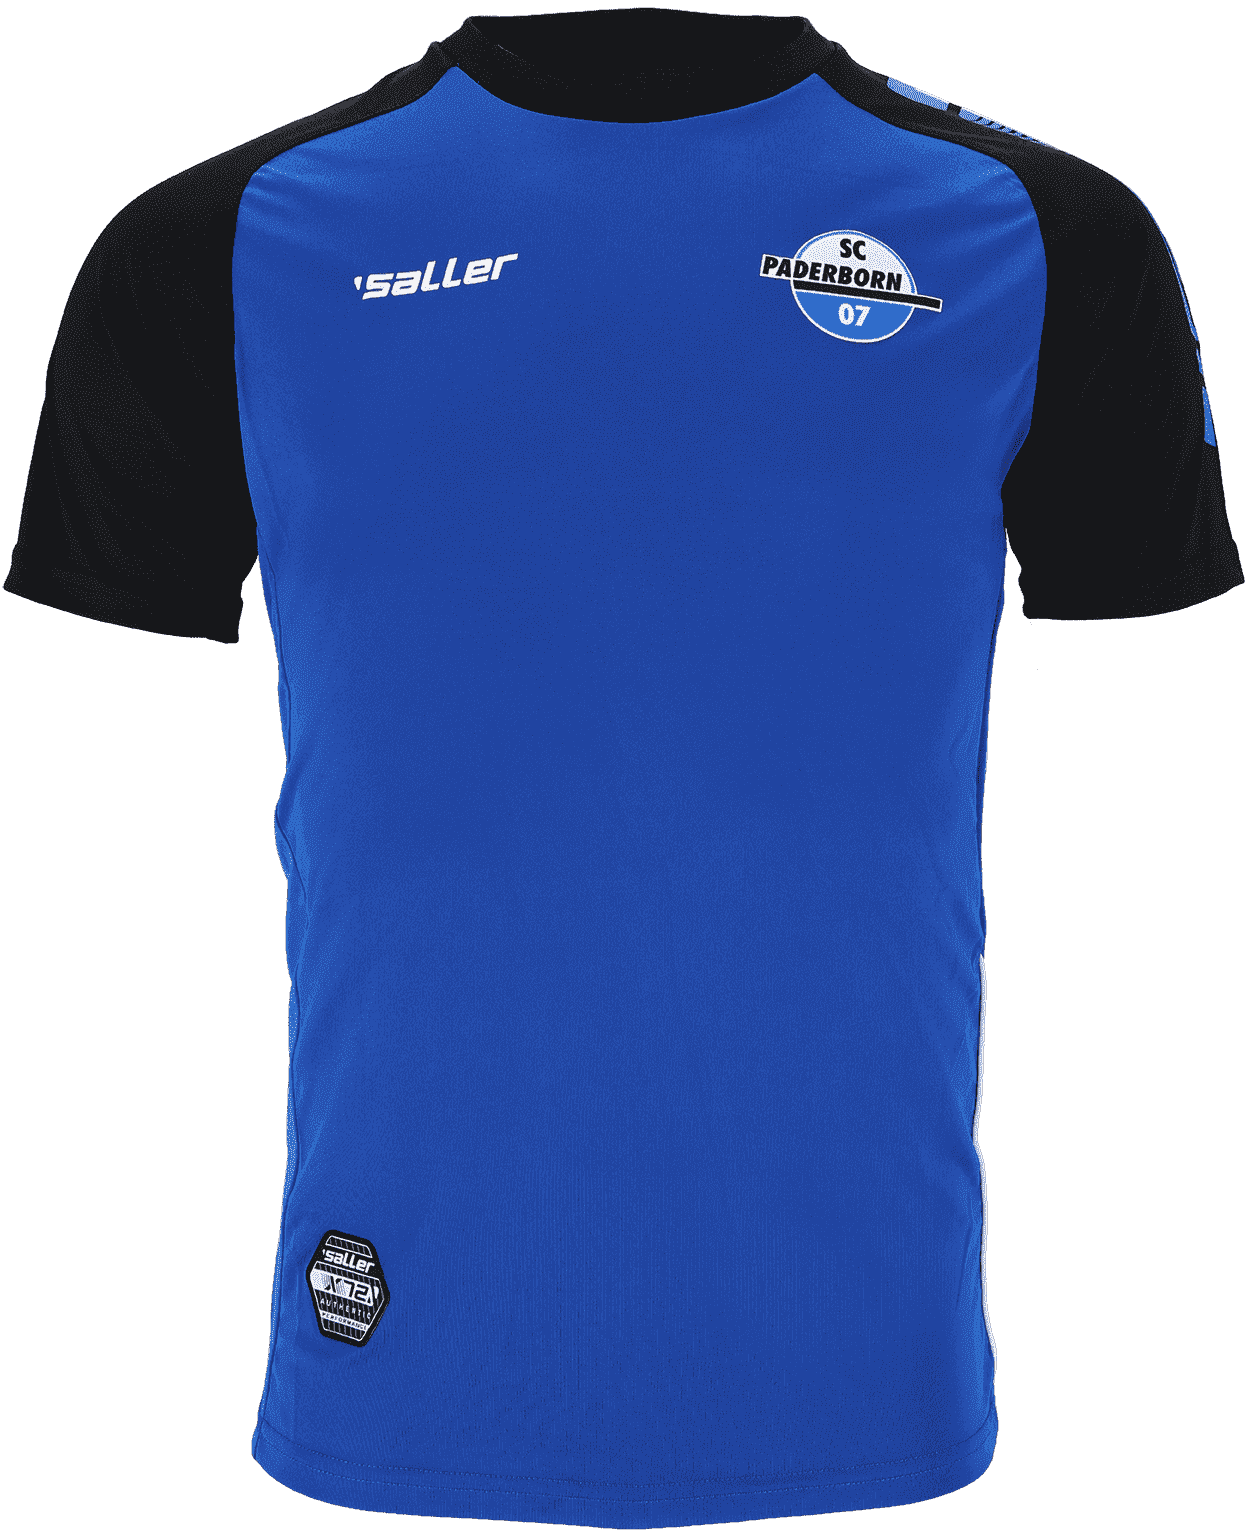 Winterjacke SC Paderborn 2019/2020 saller 